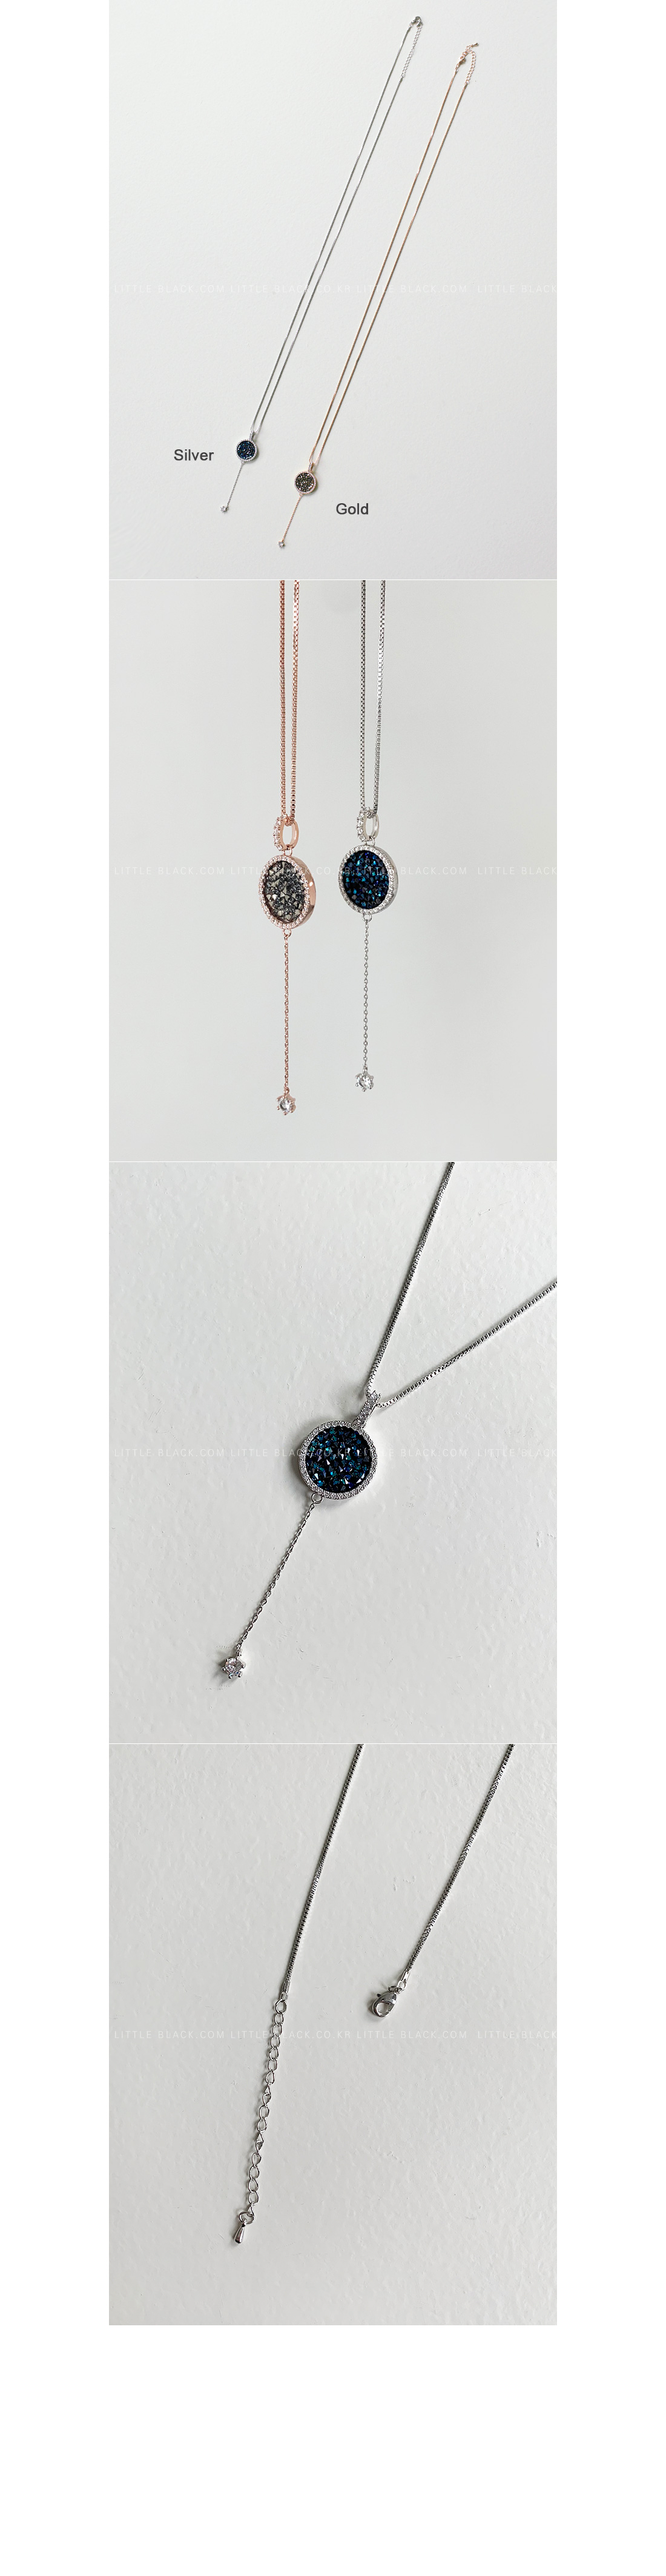 Rhinestone Embellished Drop Necklace|